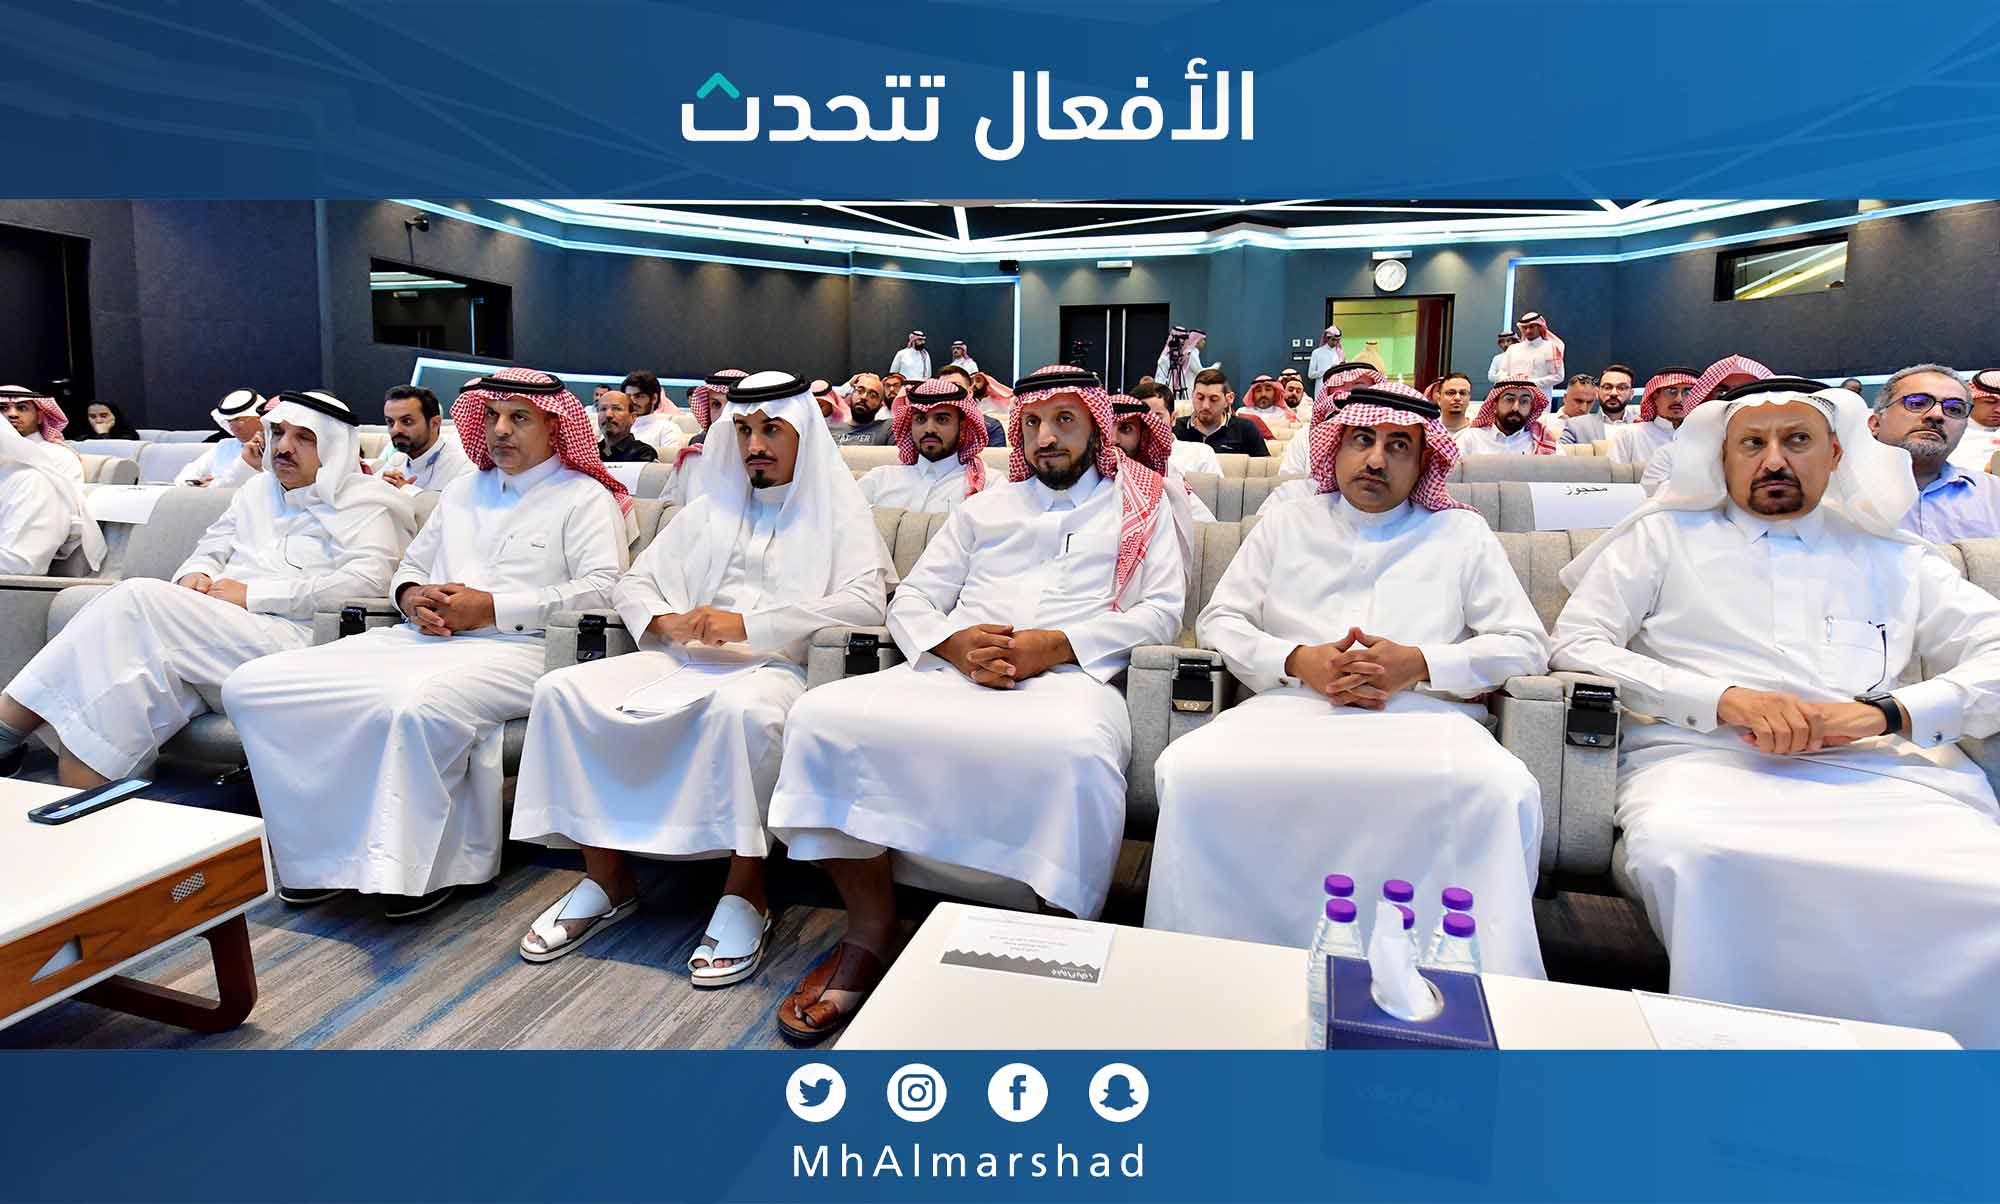 حضور واسع من المهتمين، ونقاش هادف خلال الورشة التعريفية المنعقدة اليوم بـ #غرفة_الرياض عن (كود البناء السعودي وإجراءات رخص البناء)